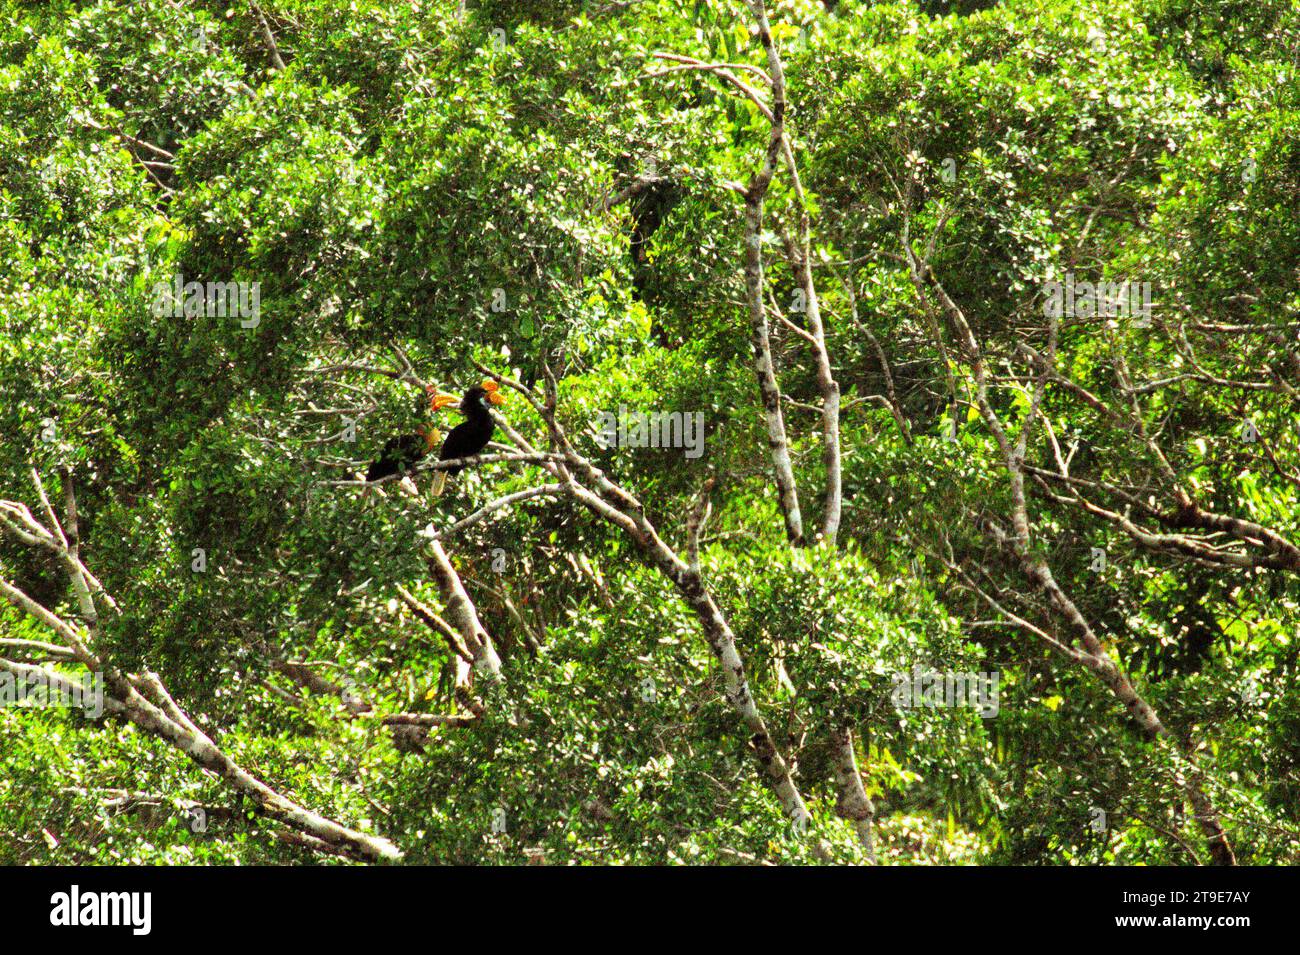 Ein Paar Noppenhornvögel (Rhyticeros cassidix), eine monogame Art mit langsamen Brutraten, wird auf einem Baum in einer vegetarischen Landschaft am Fuße des Mount Tangkoko und Duasudara (Dua Saudara) in Bitung, Nord-Sulawesi, Indonesien, fotografiert. Nashornvogel, der aufgrund des hohen Wertes ihres Fleisches, ihrer Kaskaden und ihrer Schwanzfedern für die Jagd anfällig ist spielt eine wichtige Rolle bei der Waldregeneration und bei der Erhaltung der Dichte großer Bäume durch seine Fähigkeit als Saatgutverteilungsmittel, während gleichzeitig ein gesunder Regenwald durch seine kohlenstoffabsorbierende Rolle bei der Bekämpfung der globalen Erwärmung wichtig ist Stockfoto